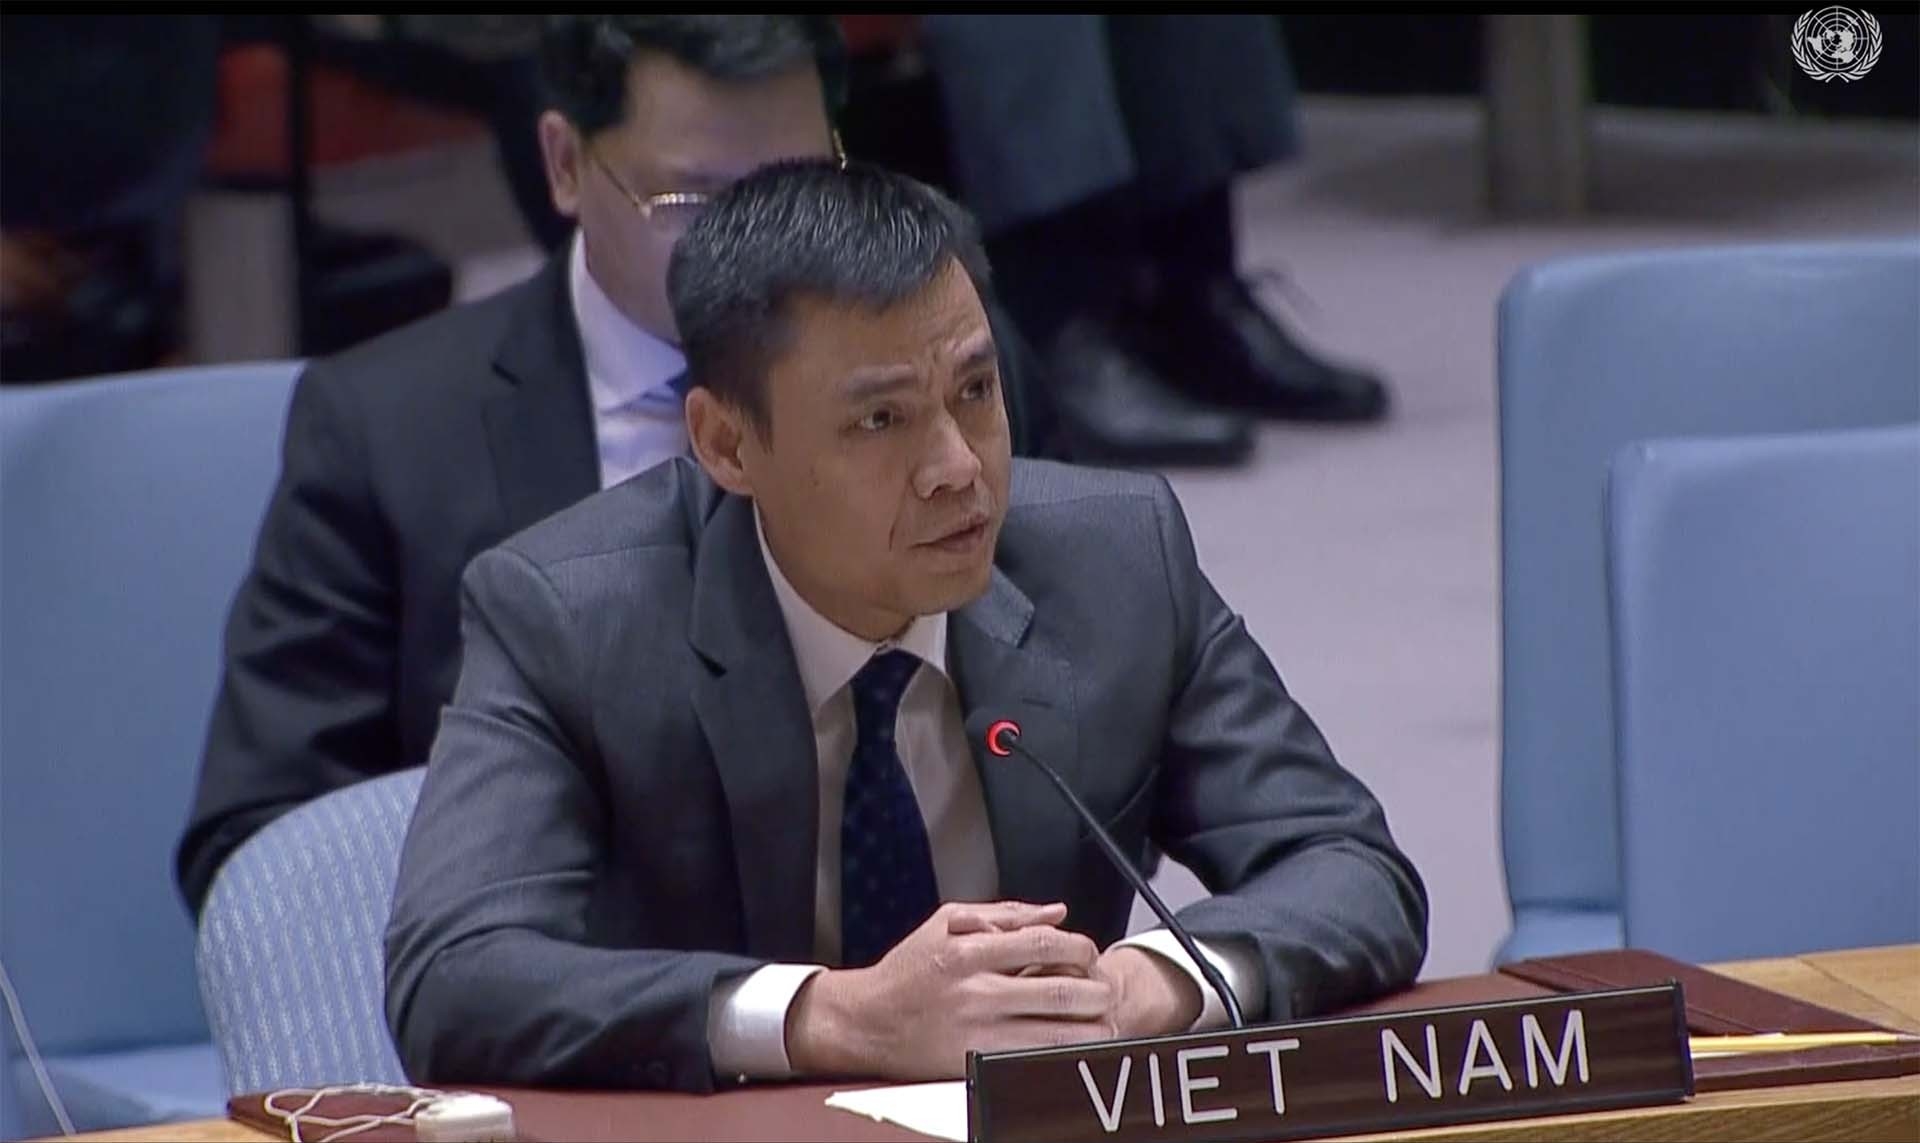 Вьетнам поддерживает меры укрепления доверия для содействия устойчивому миру